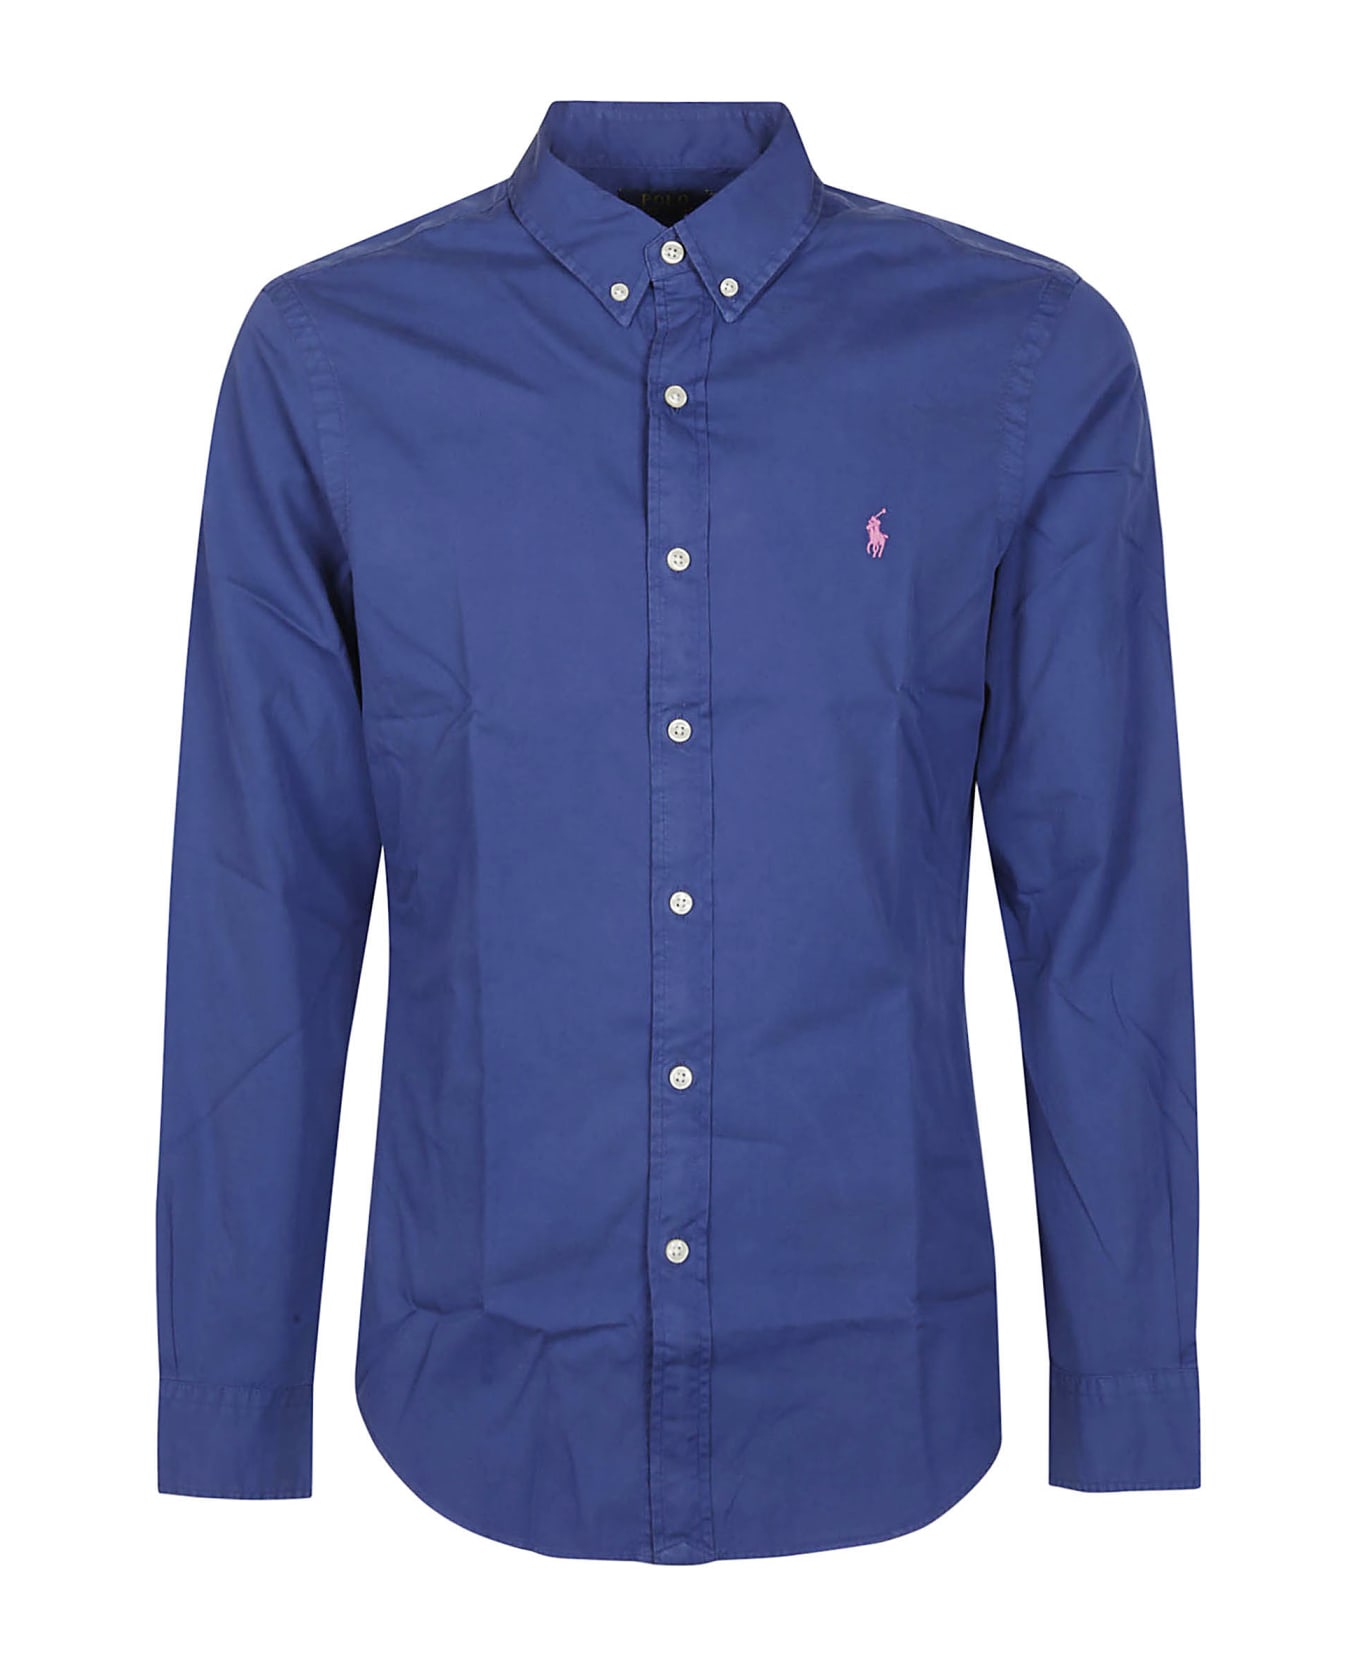 Polo Ralph Lauren Long Sleeve Sport Shirt - INCHIOSTRO